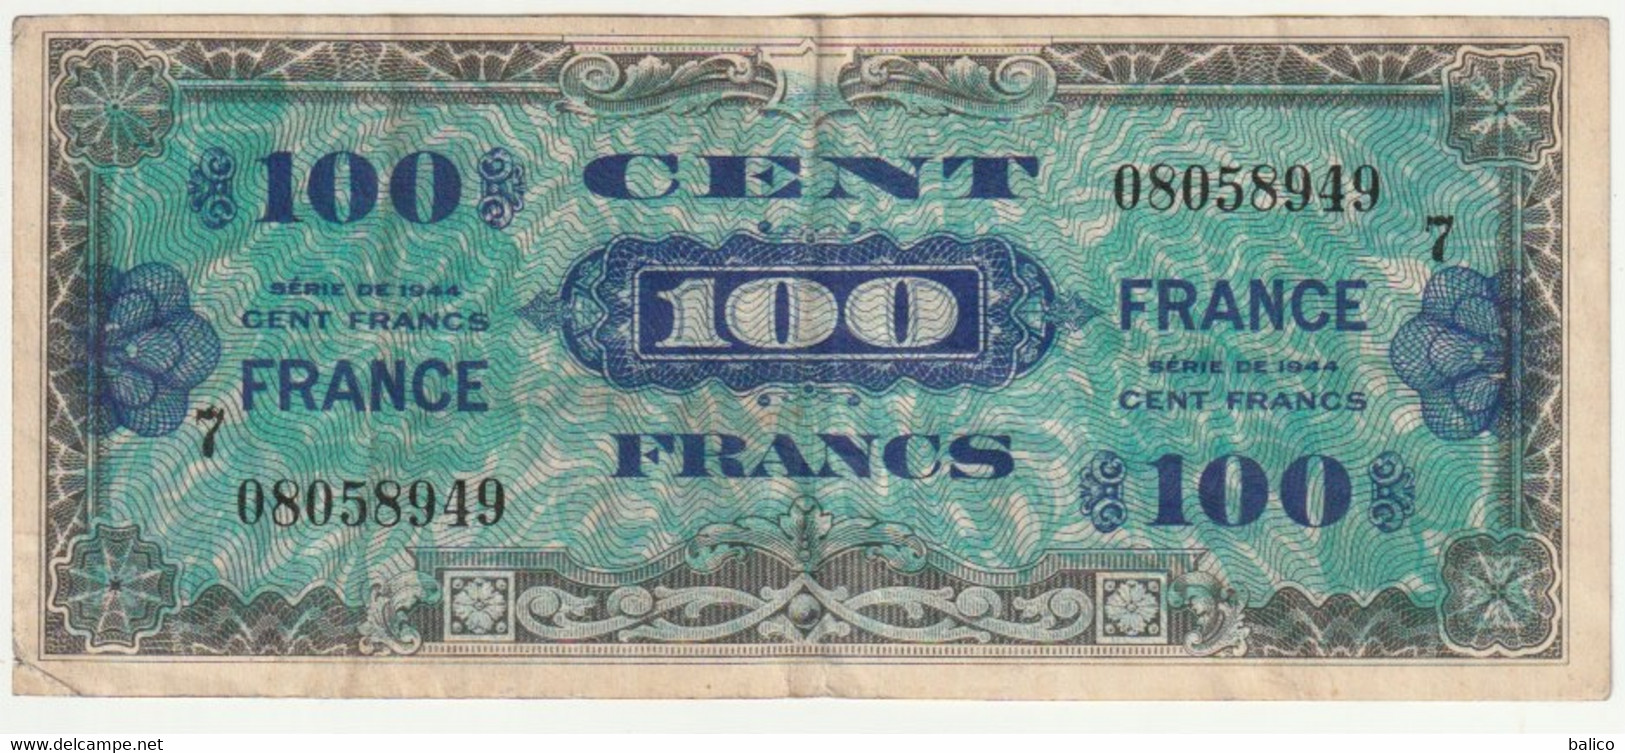 France, 100 Francs   1944   N° 08058949 - 1944 Bandiera/Francia